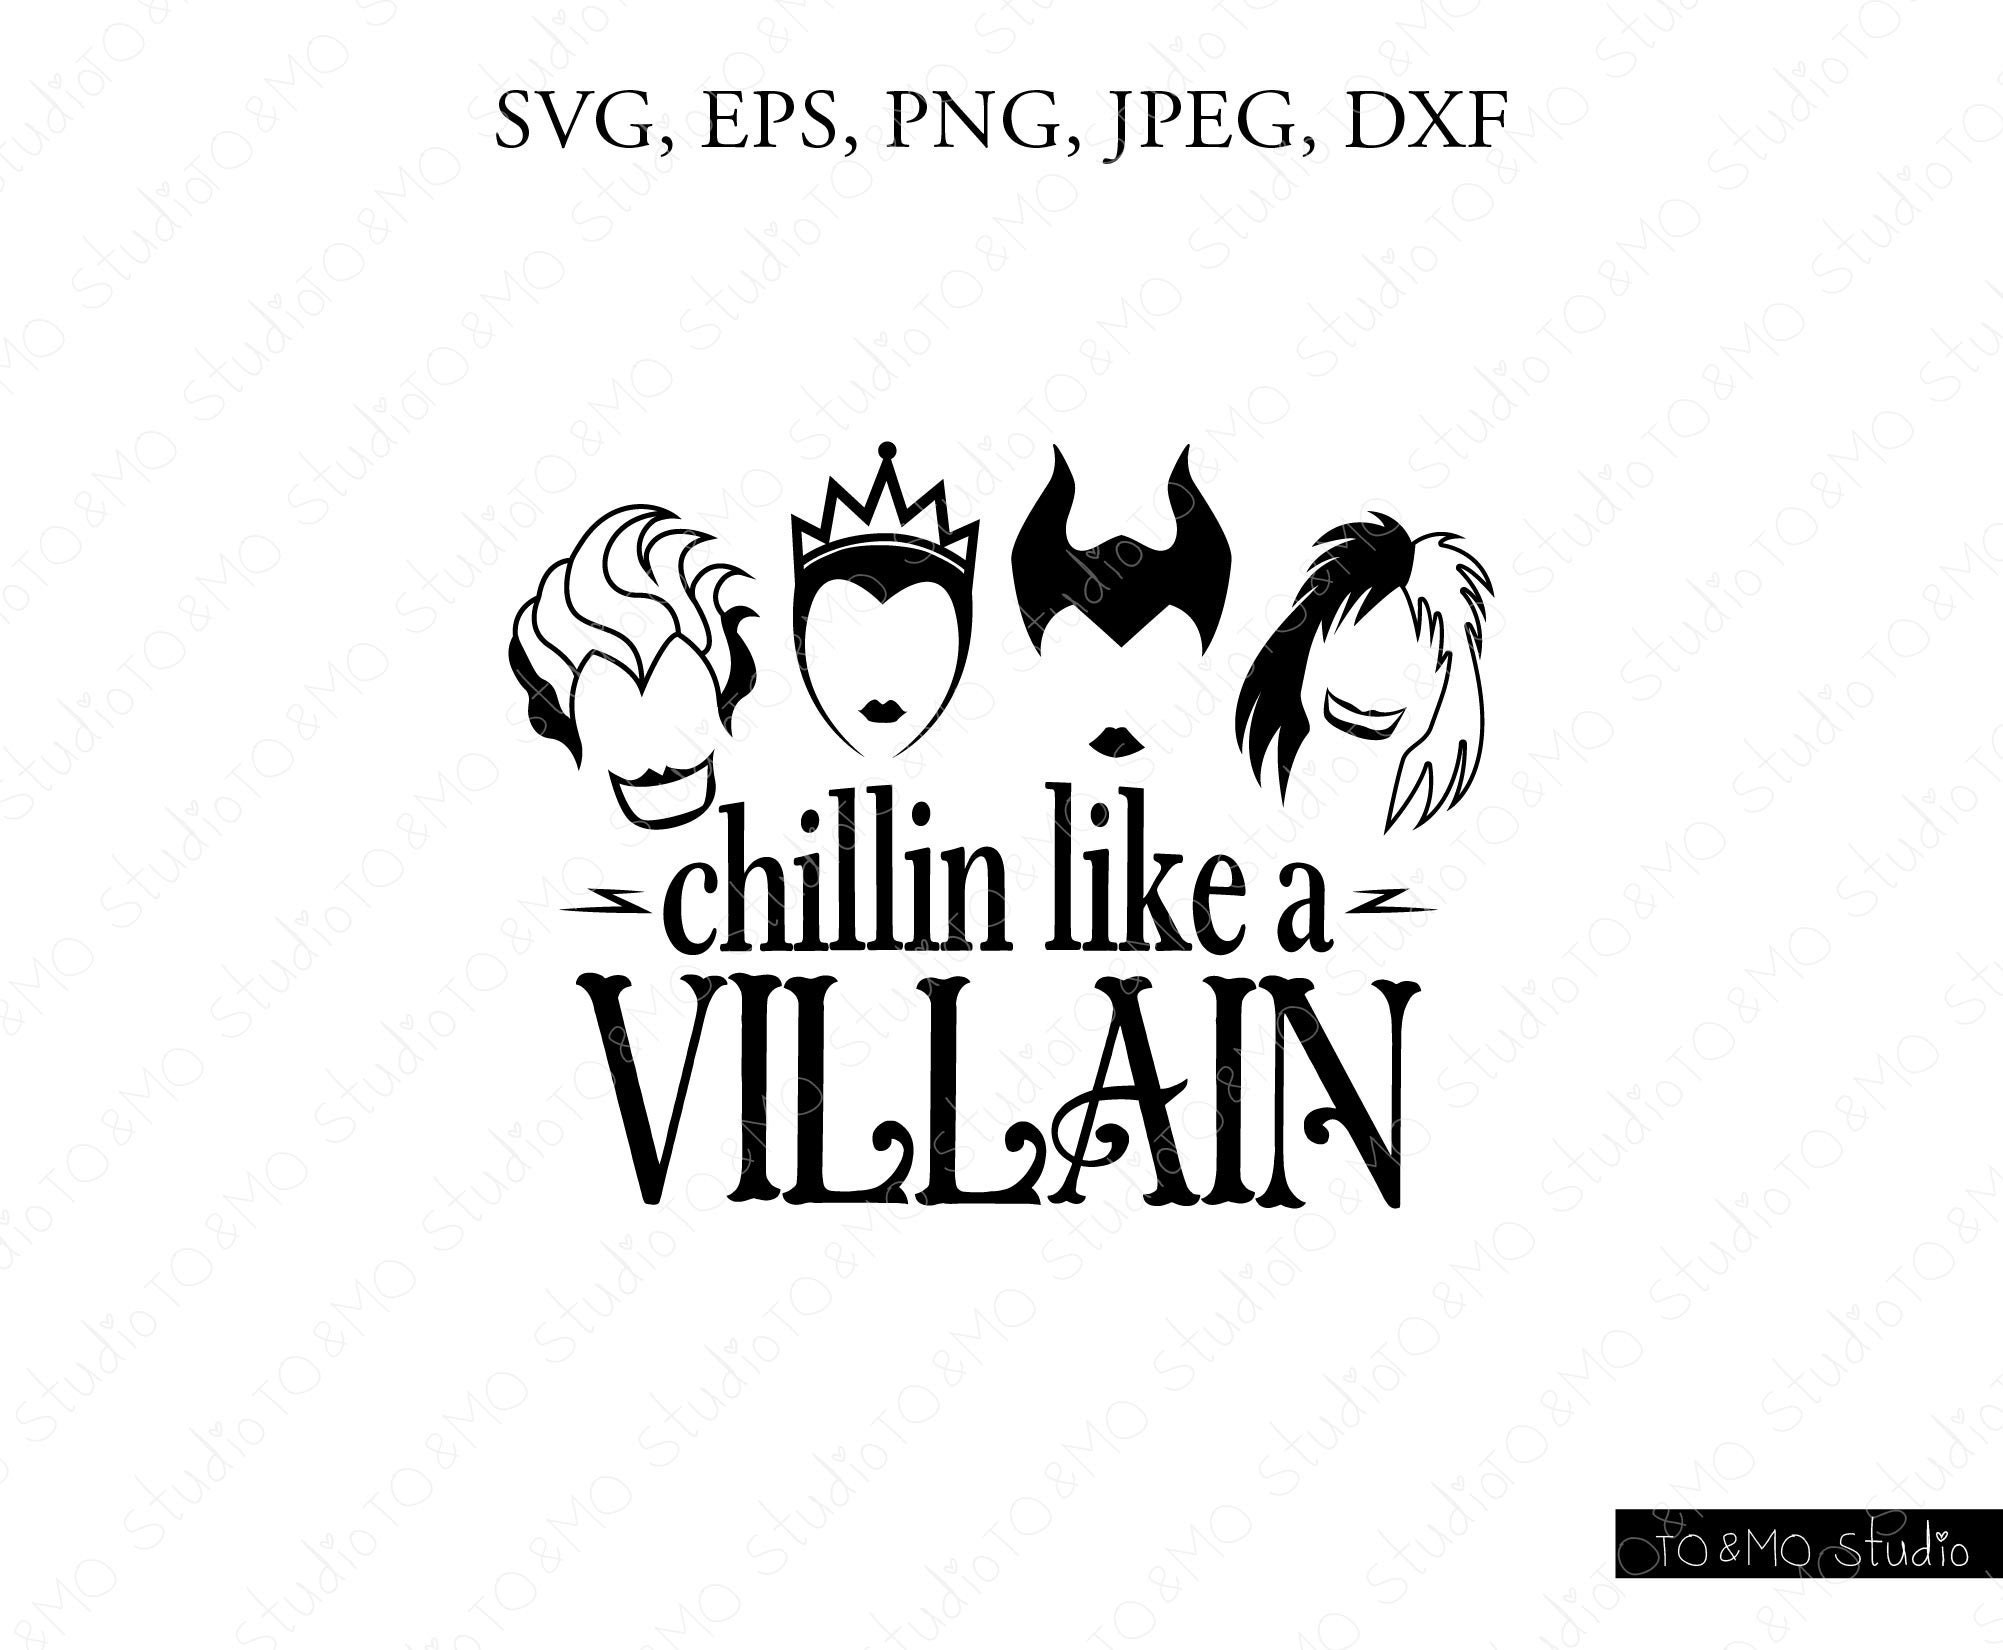 Like a villain bad. Chillin like a Villain.